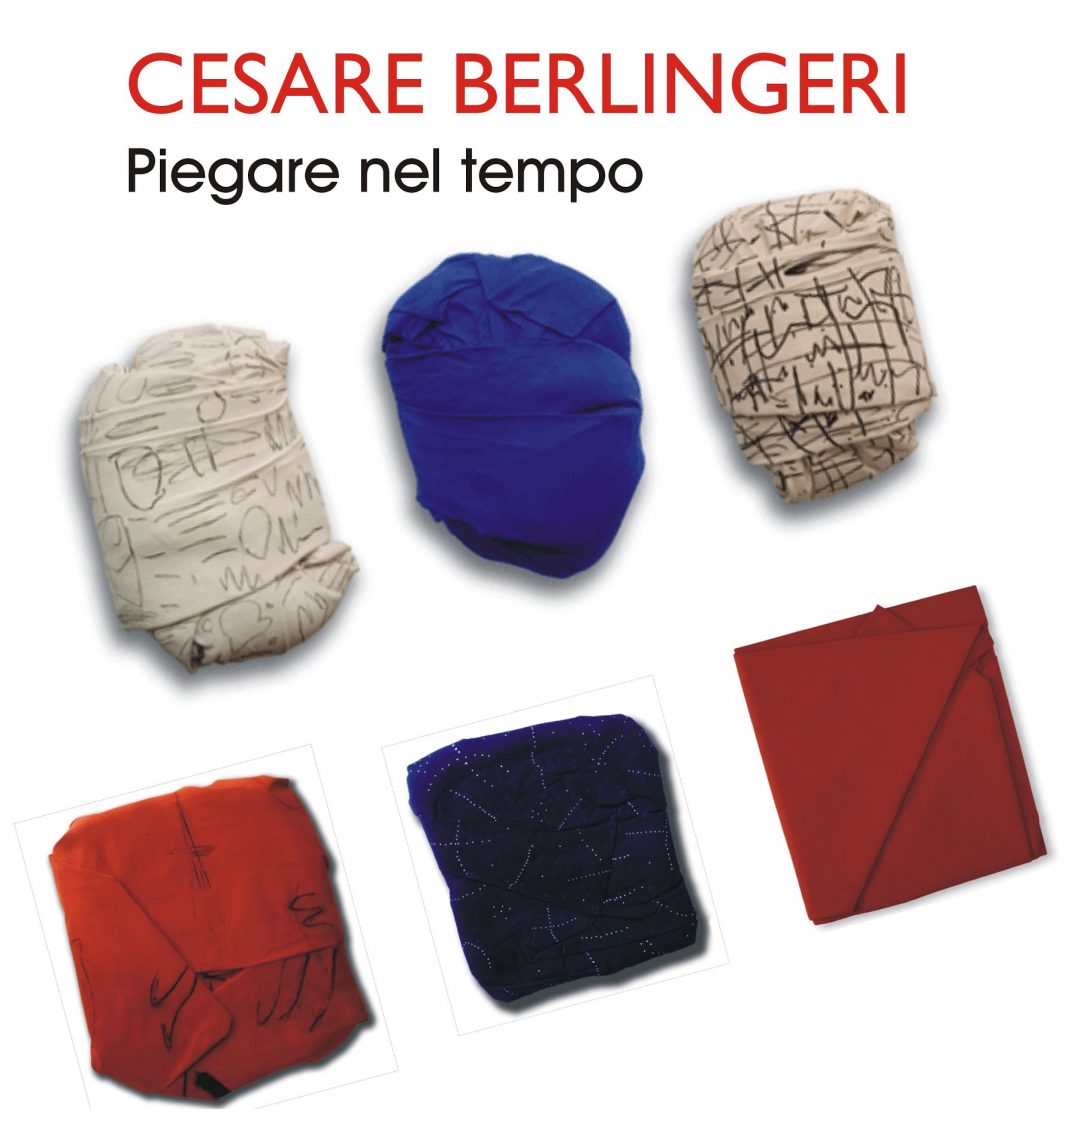 Cesare Berlingeri – Piegare nel tempohttps://www.exibart.com/repository/media/eventi/2015/05/cesare-berlingeri-8211-piegare-nel-tempo-1068x1133.jpg